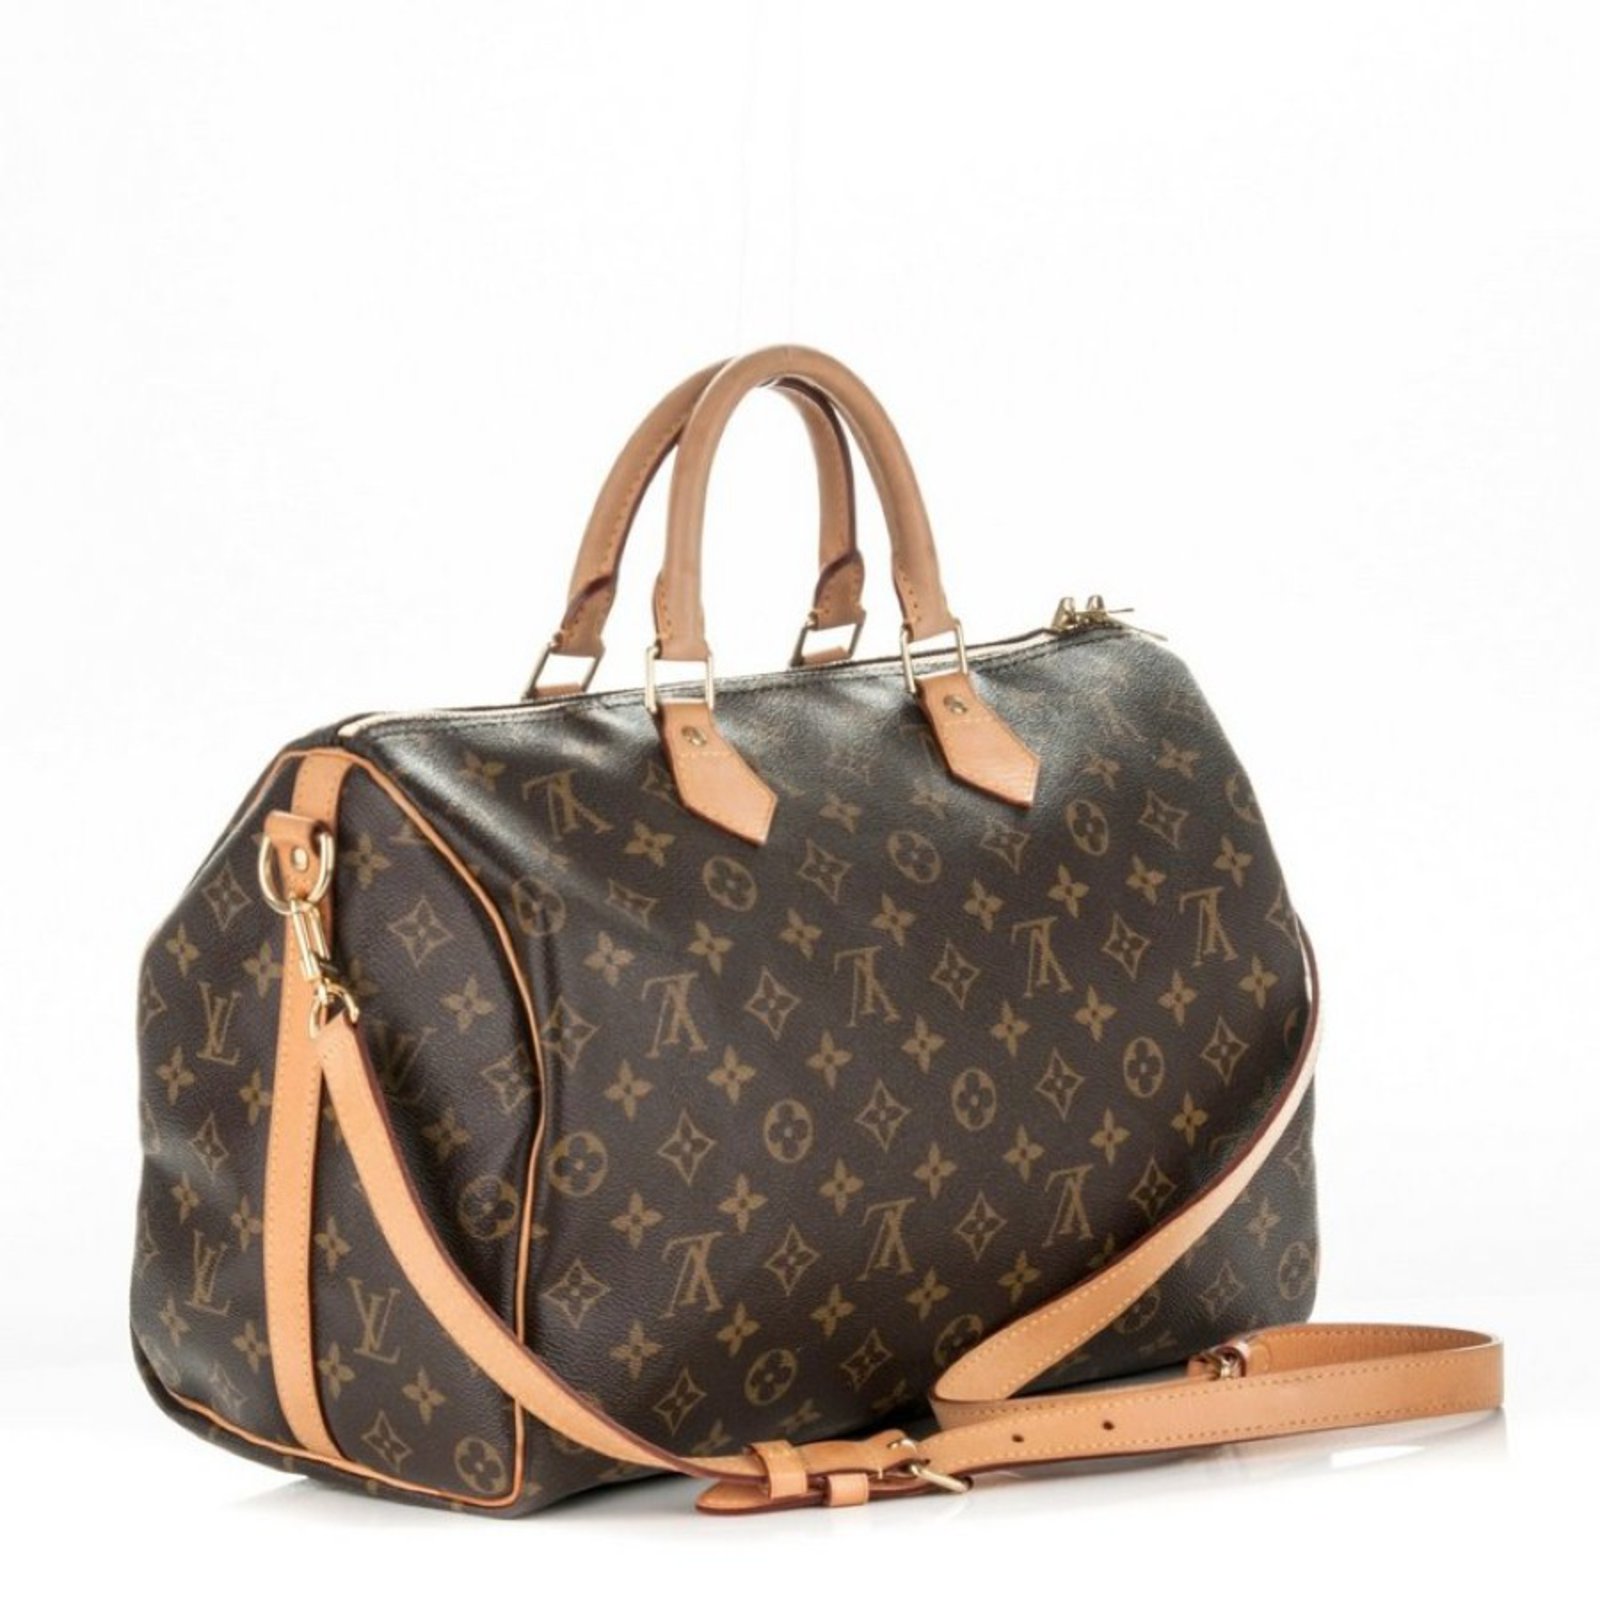 Louis Vuitton Boston Bag Speedy 35 Brown Kenya Epi M42993 Handbag Leather  VI0960 LOUIS VUITTON Women's Men's